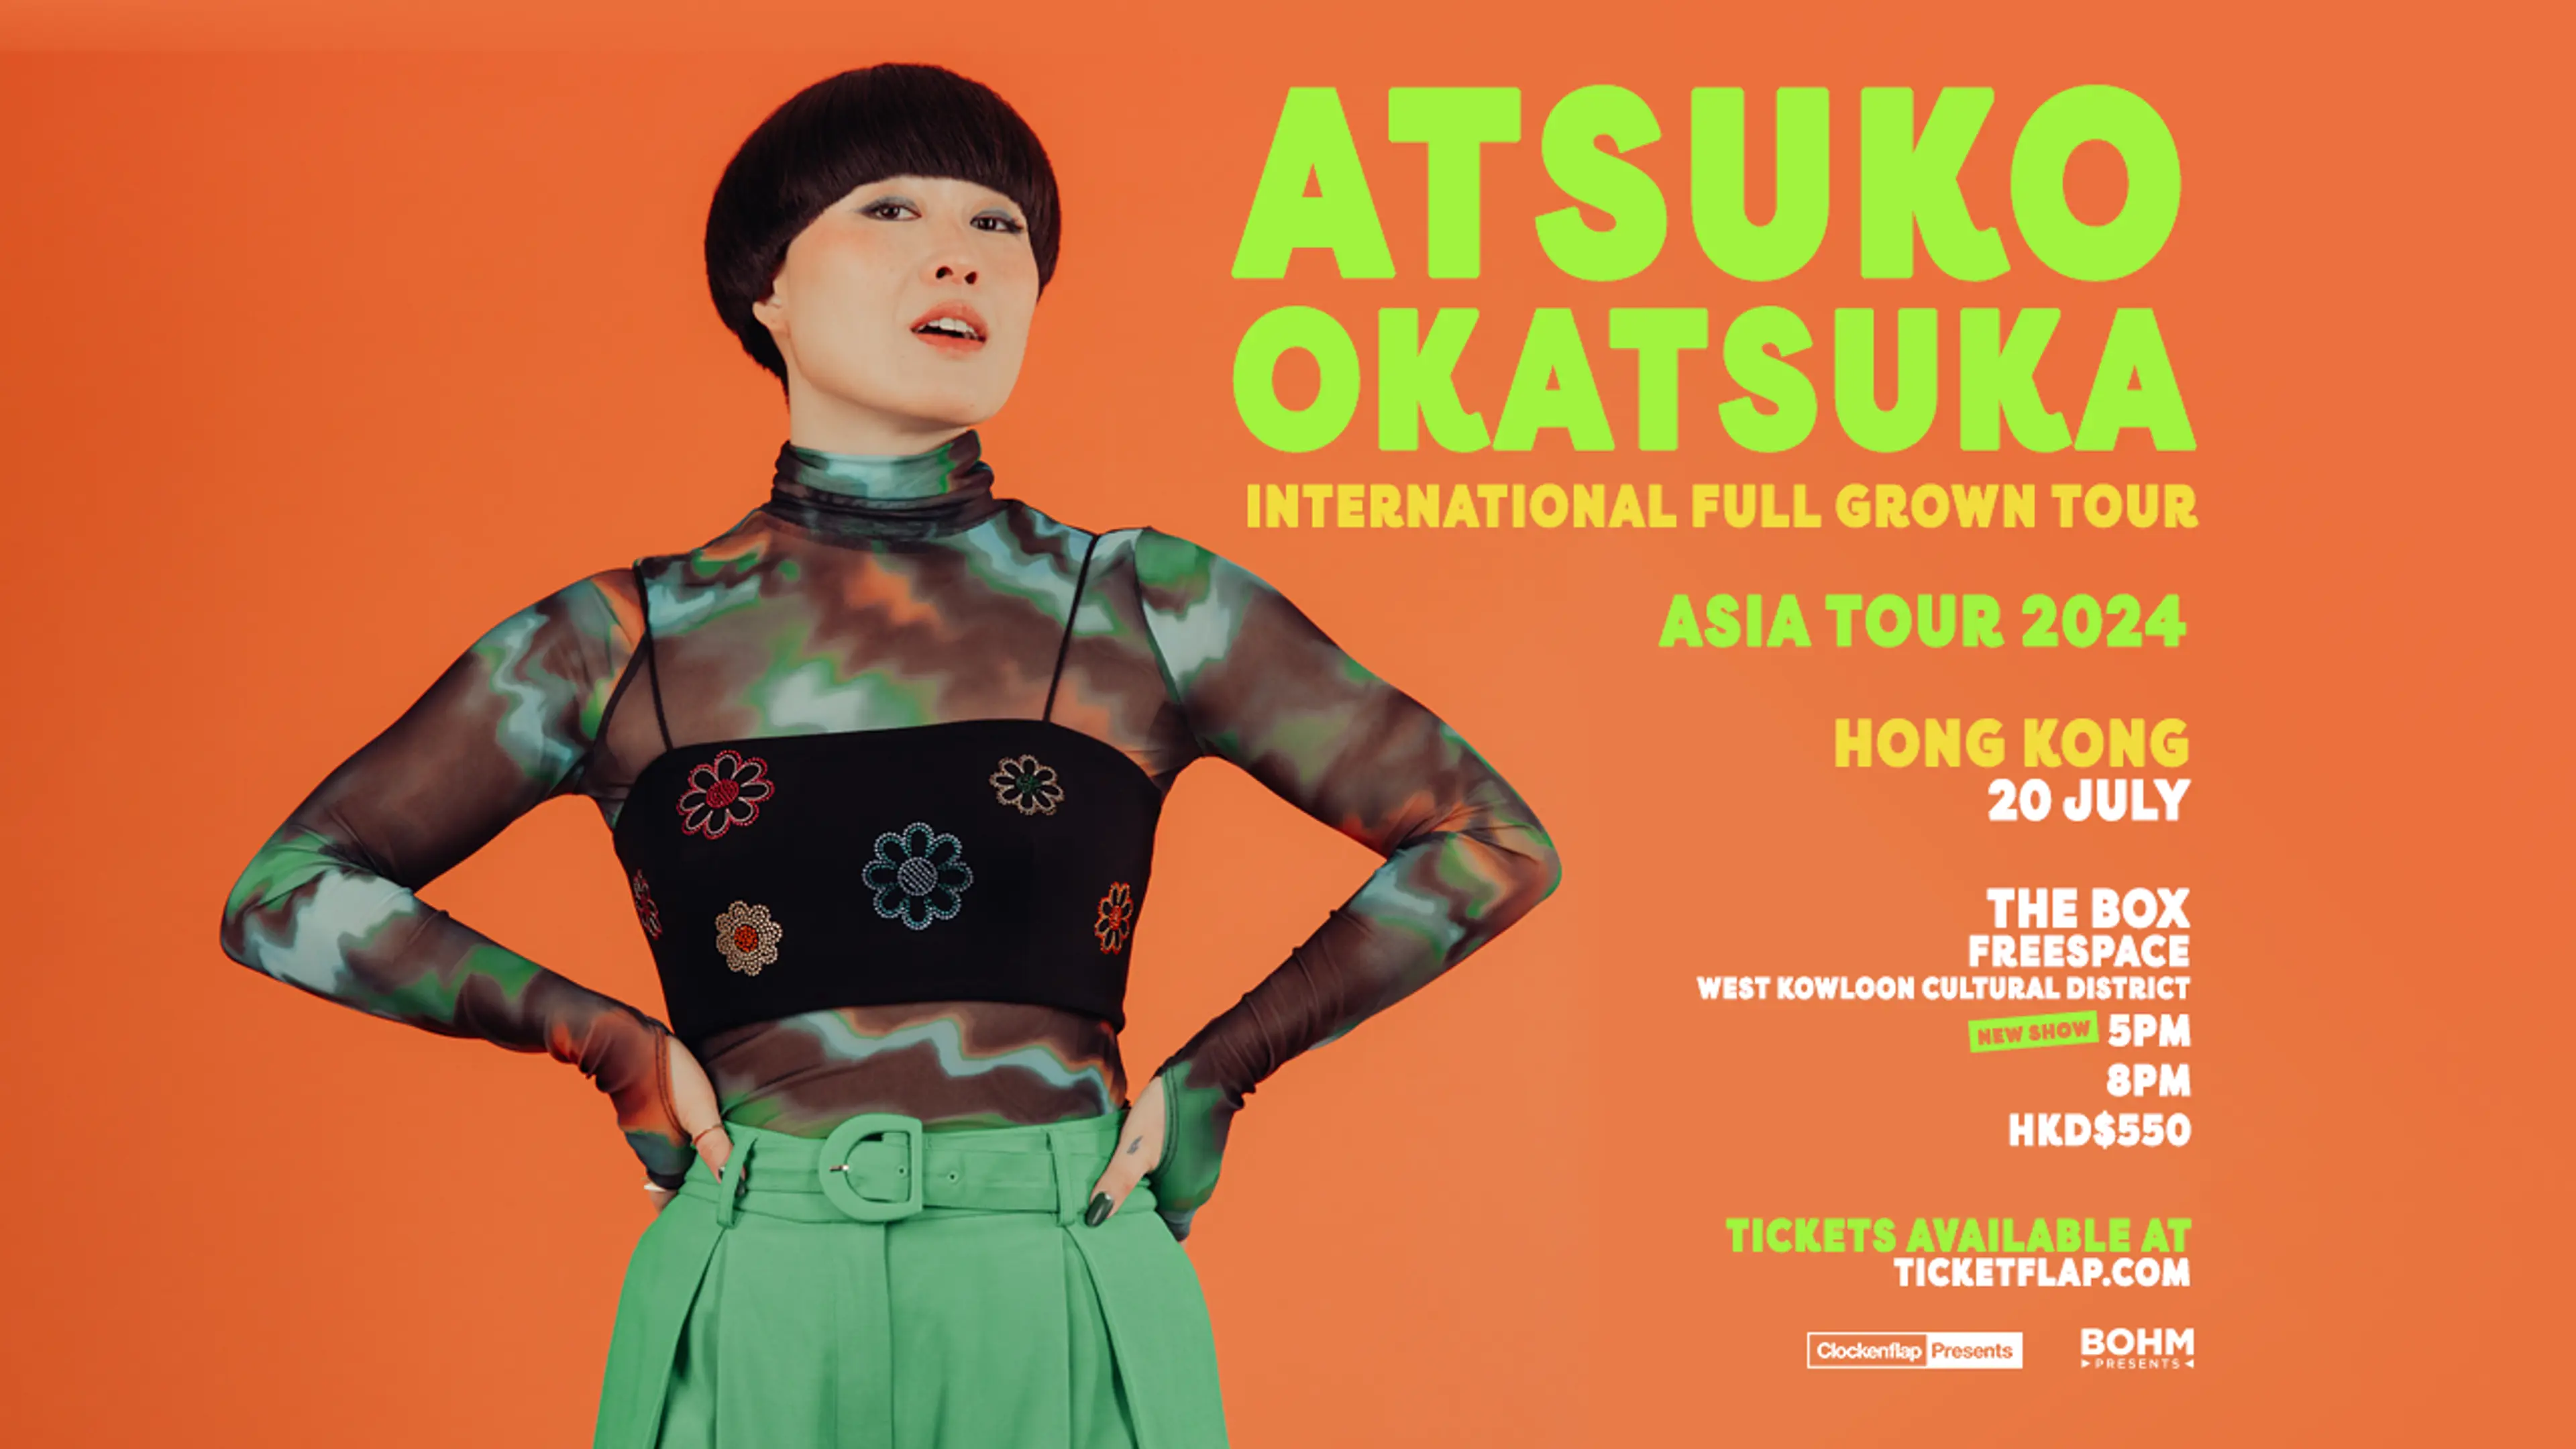 Atsuko Okatsuka, 20 Jul 2024